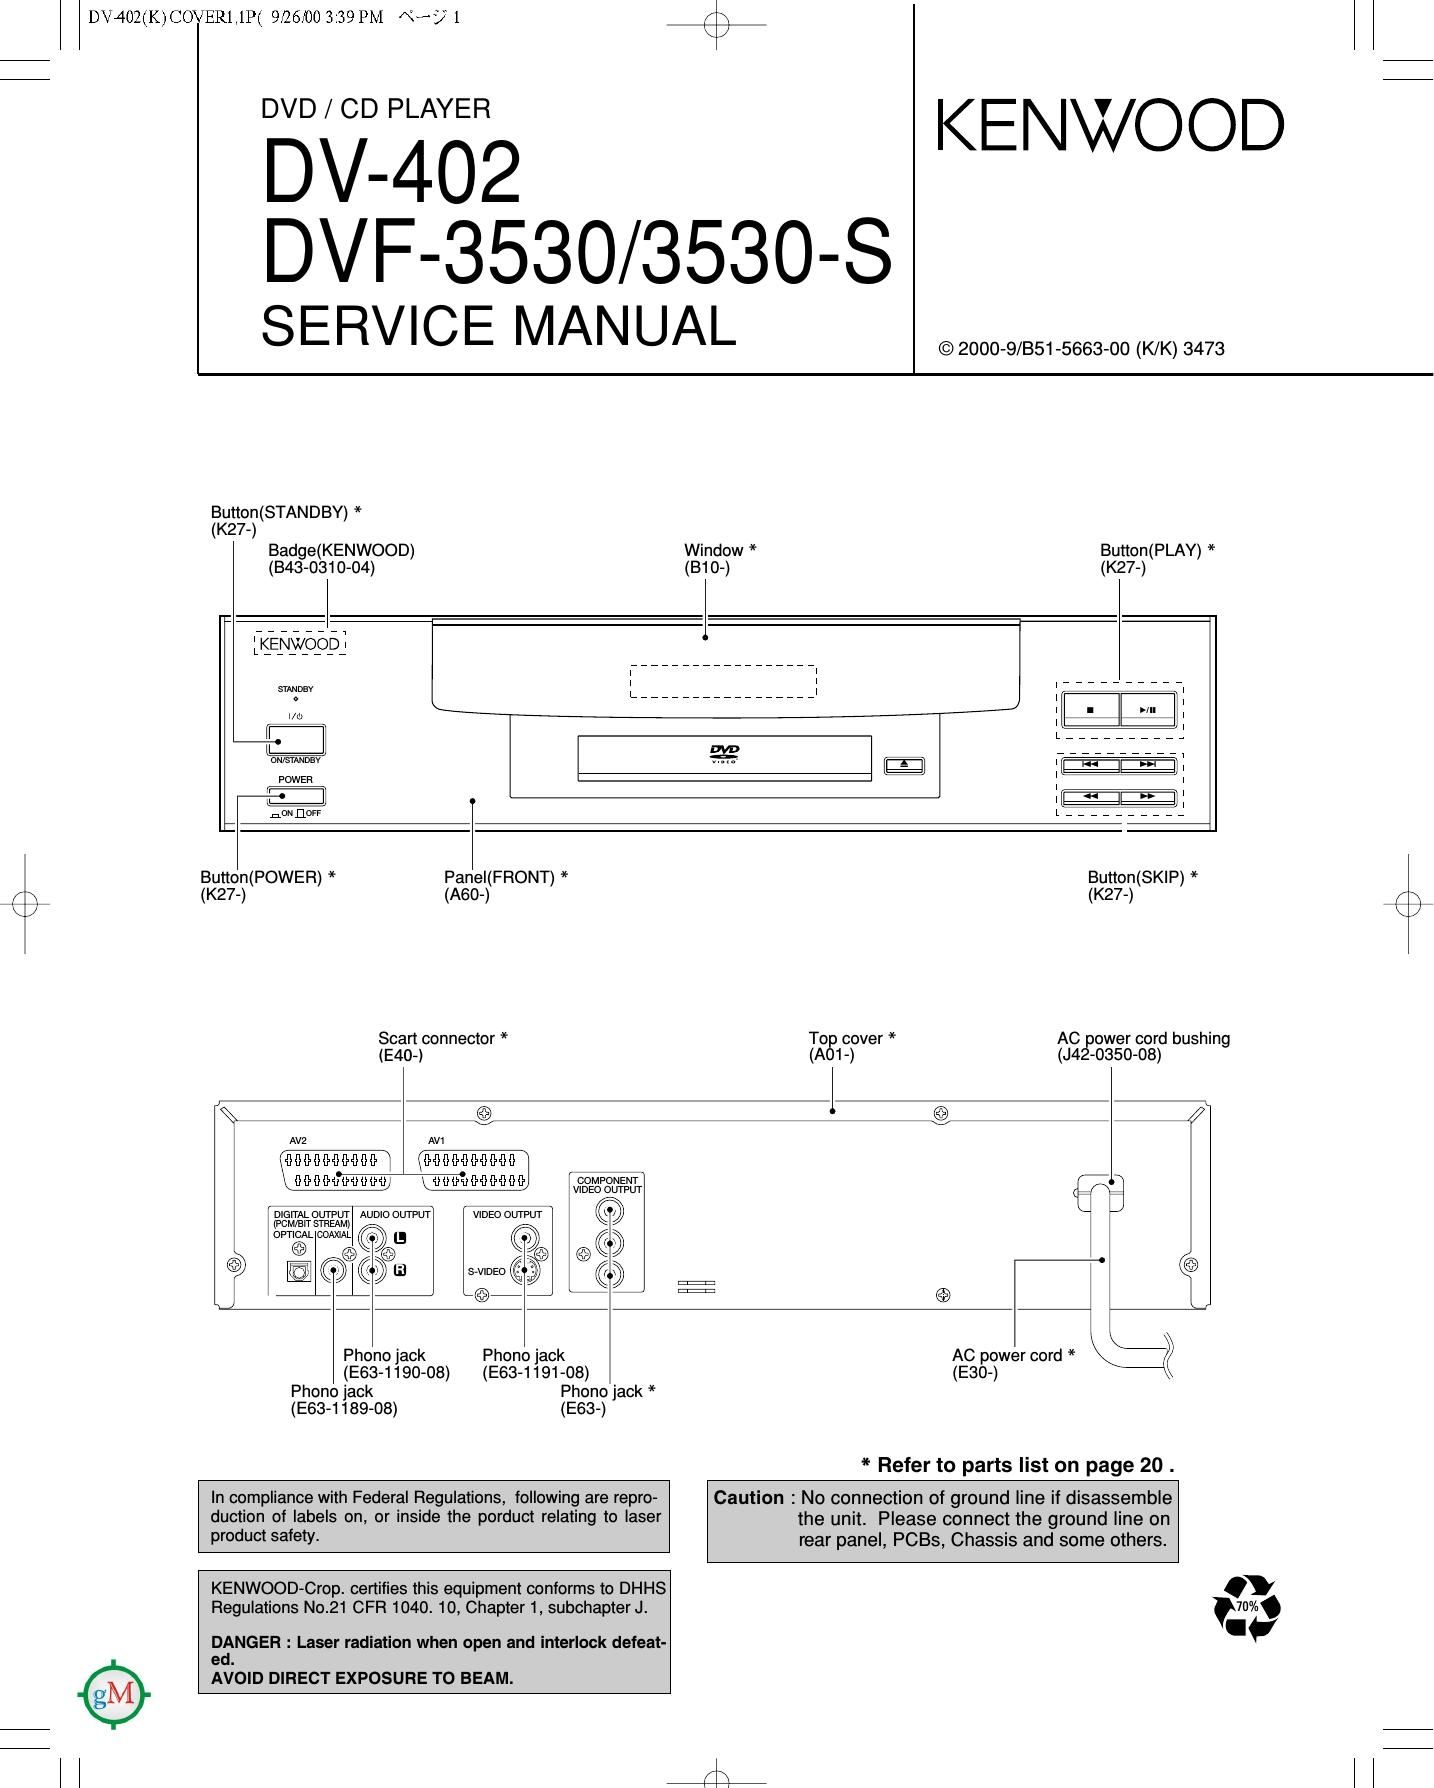 Kenwood DV 402 Service Manual